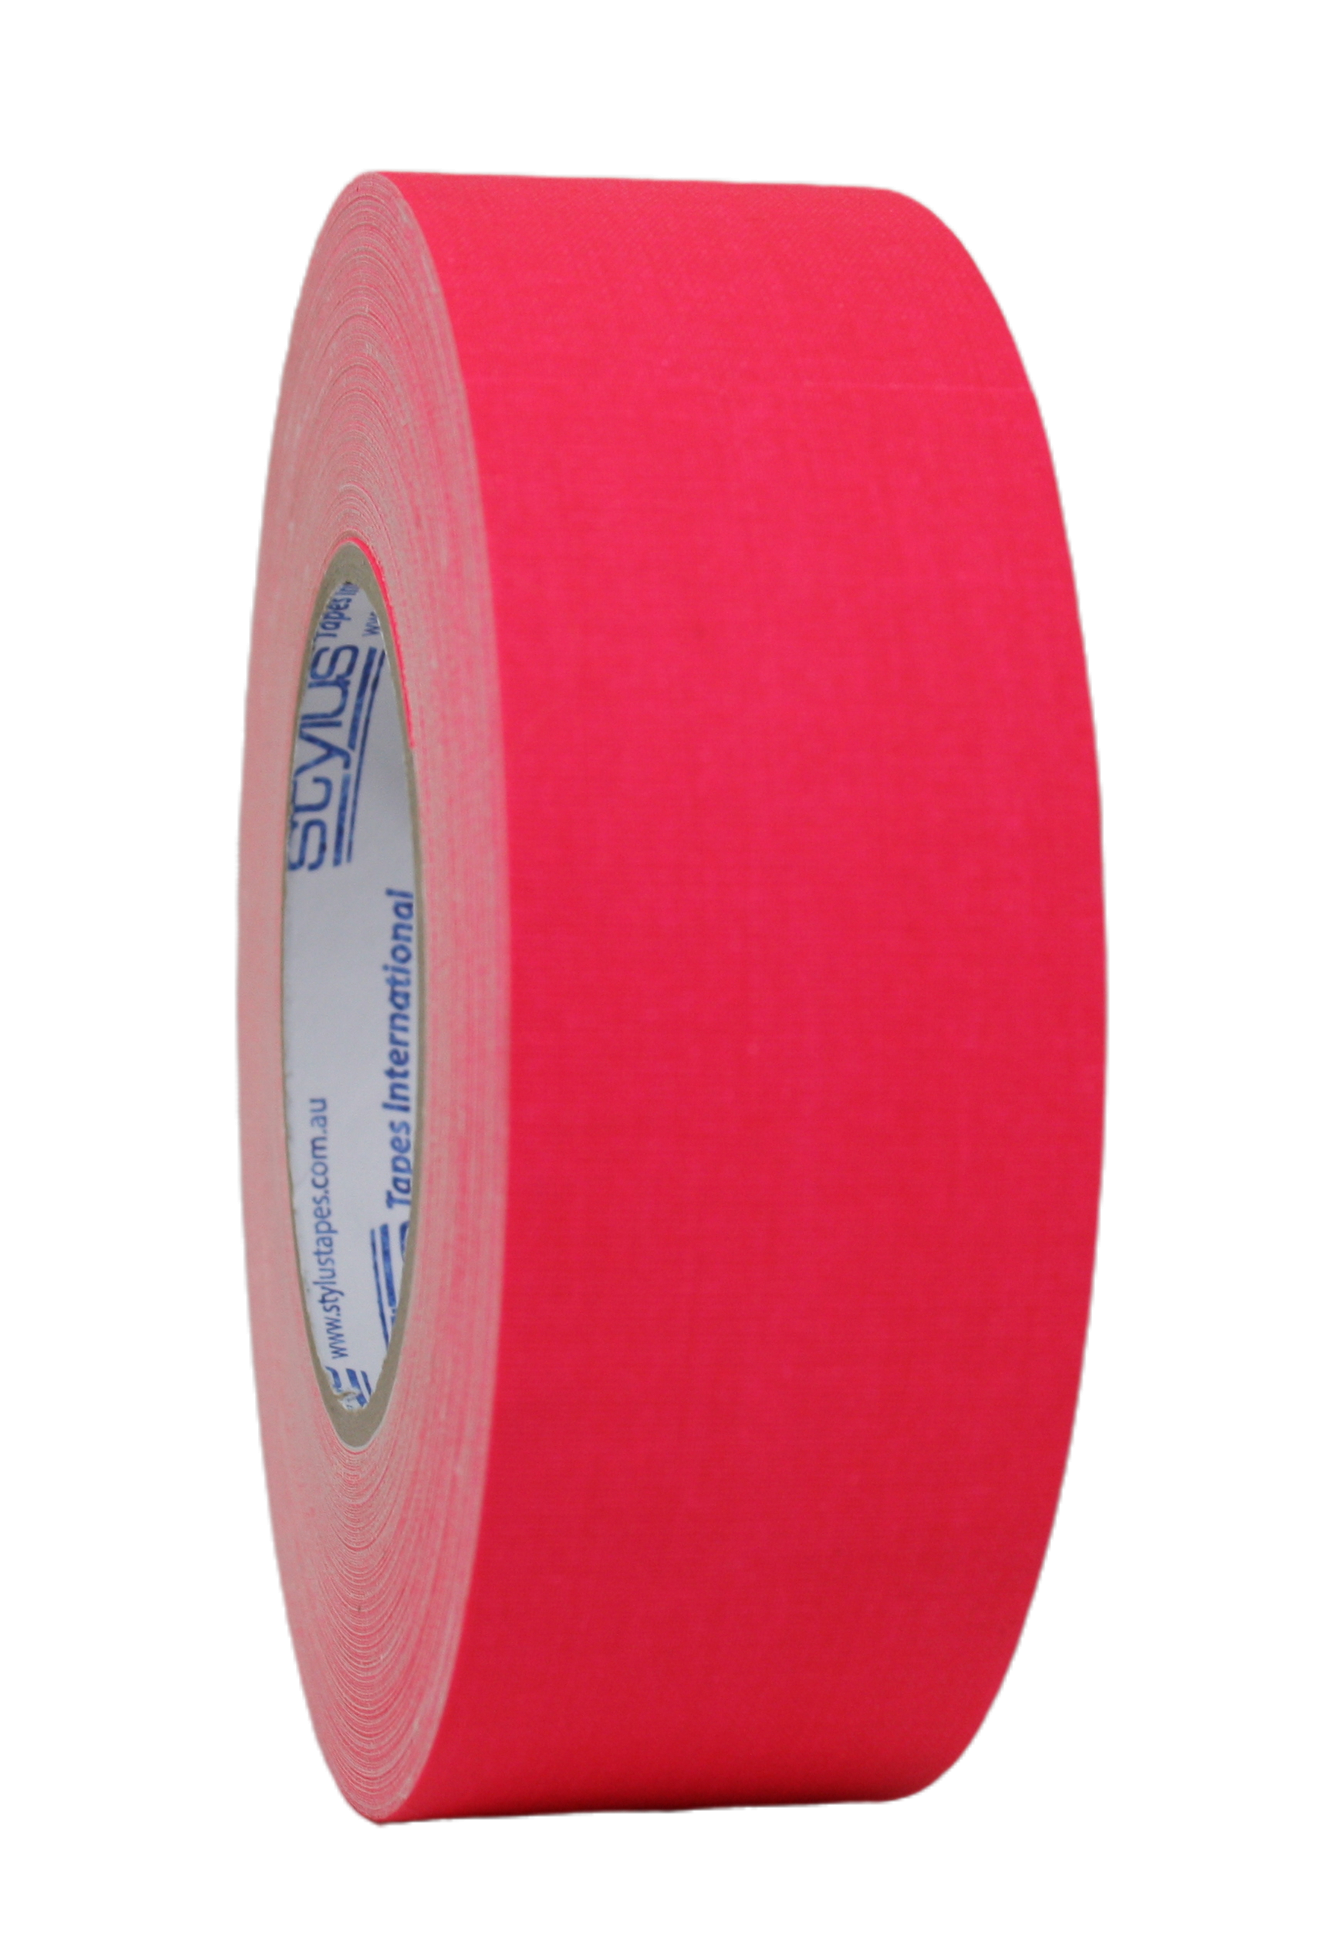 Styluss Fluorescent Gaffer Tape, 1" Pink, side view